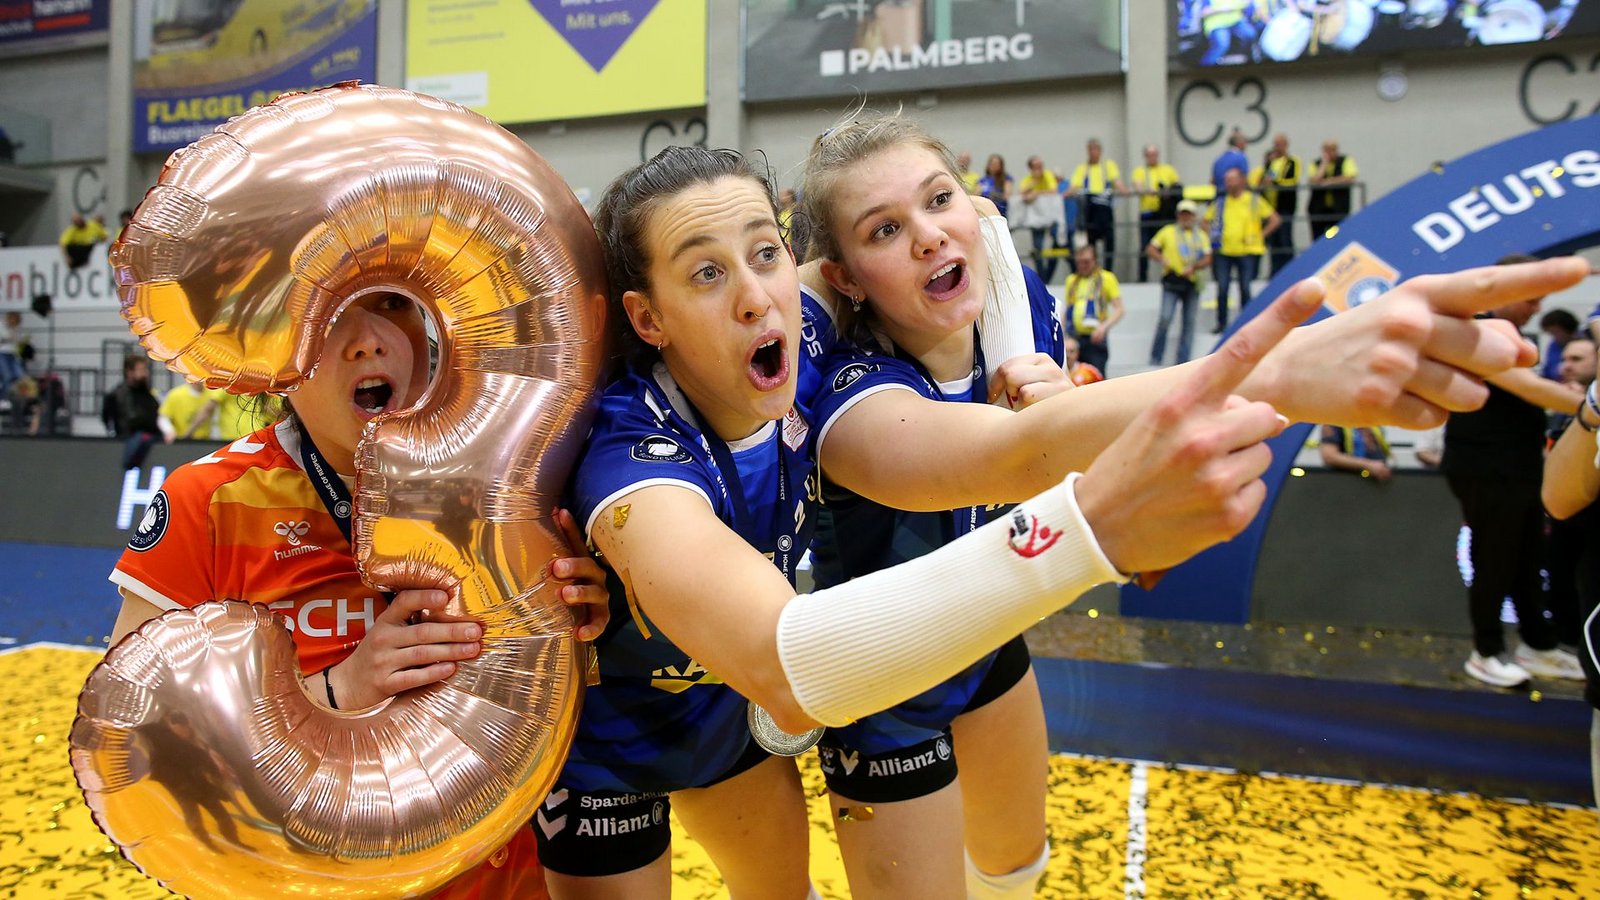 Die „3“ immer dabei: Roosa Koskelo, Maria Segura Pallerés und Eline Timmerman (v. li.) feiern die Meisterschaft von Allianz MTV Stuttgart – nach dem Pokalsieg und dem Supercup der dritte Titel der Saison.Foto: Baumann/Cathrin Müller